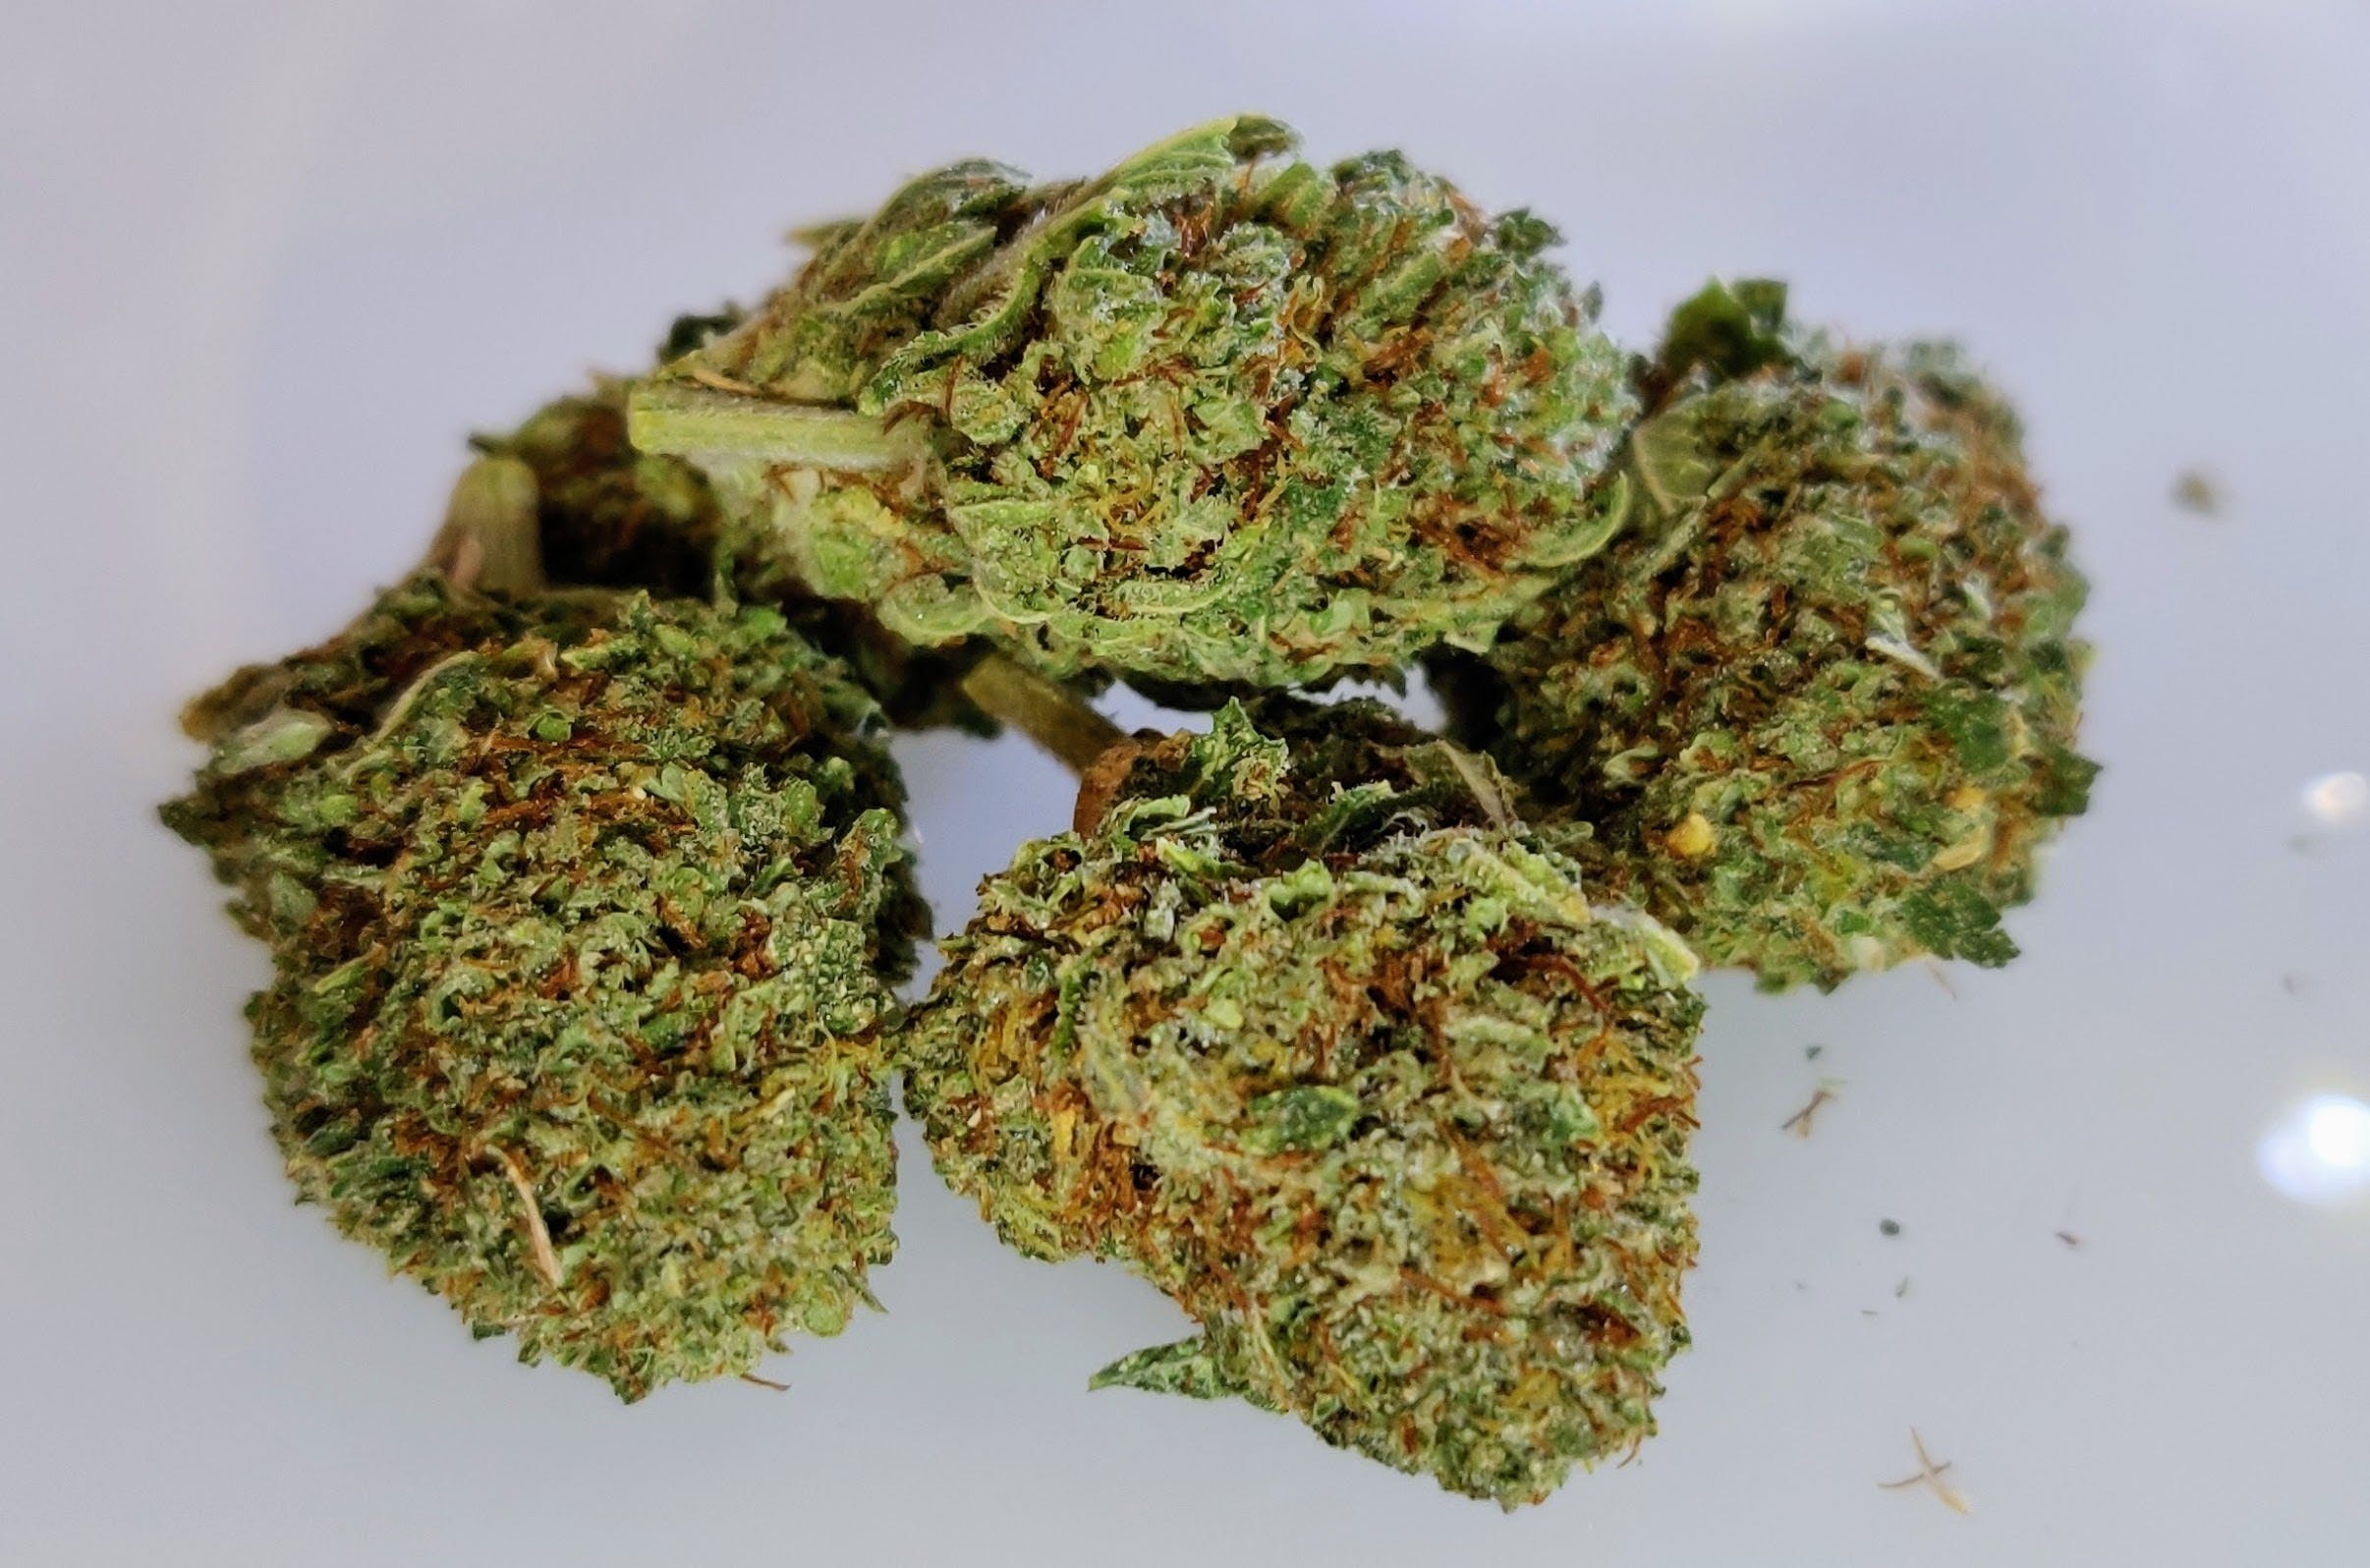 marijuana-dispensaries-the-good-place-in-norman-kong